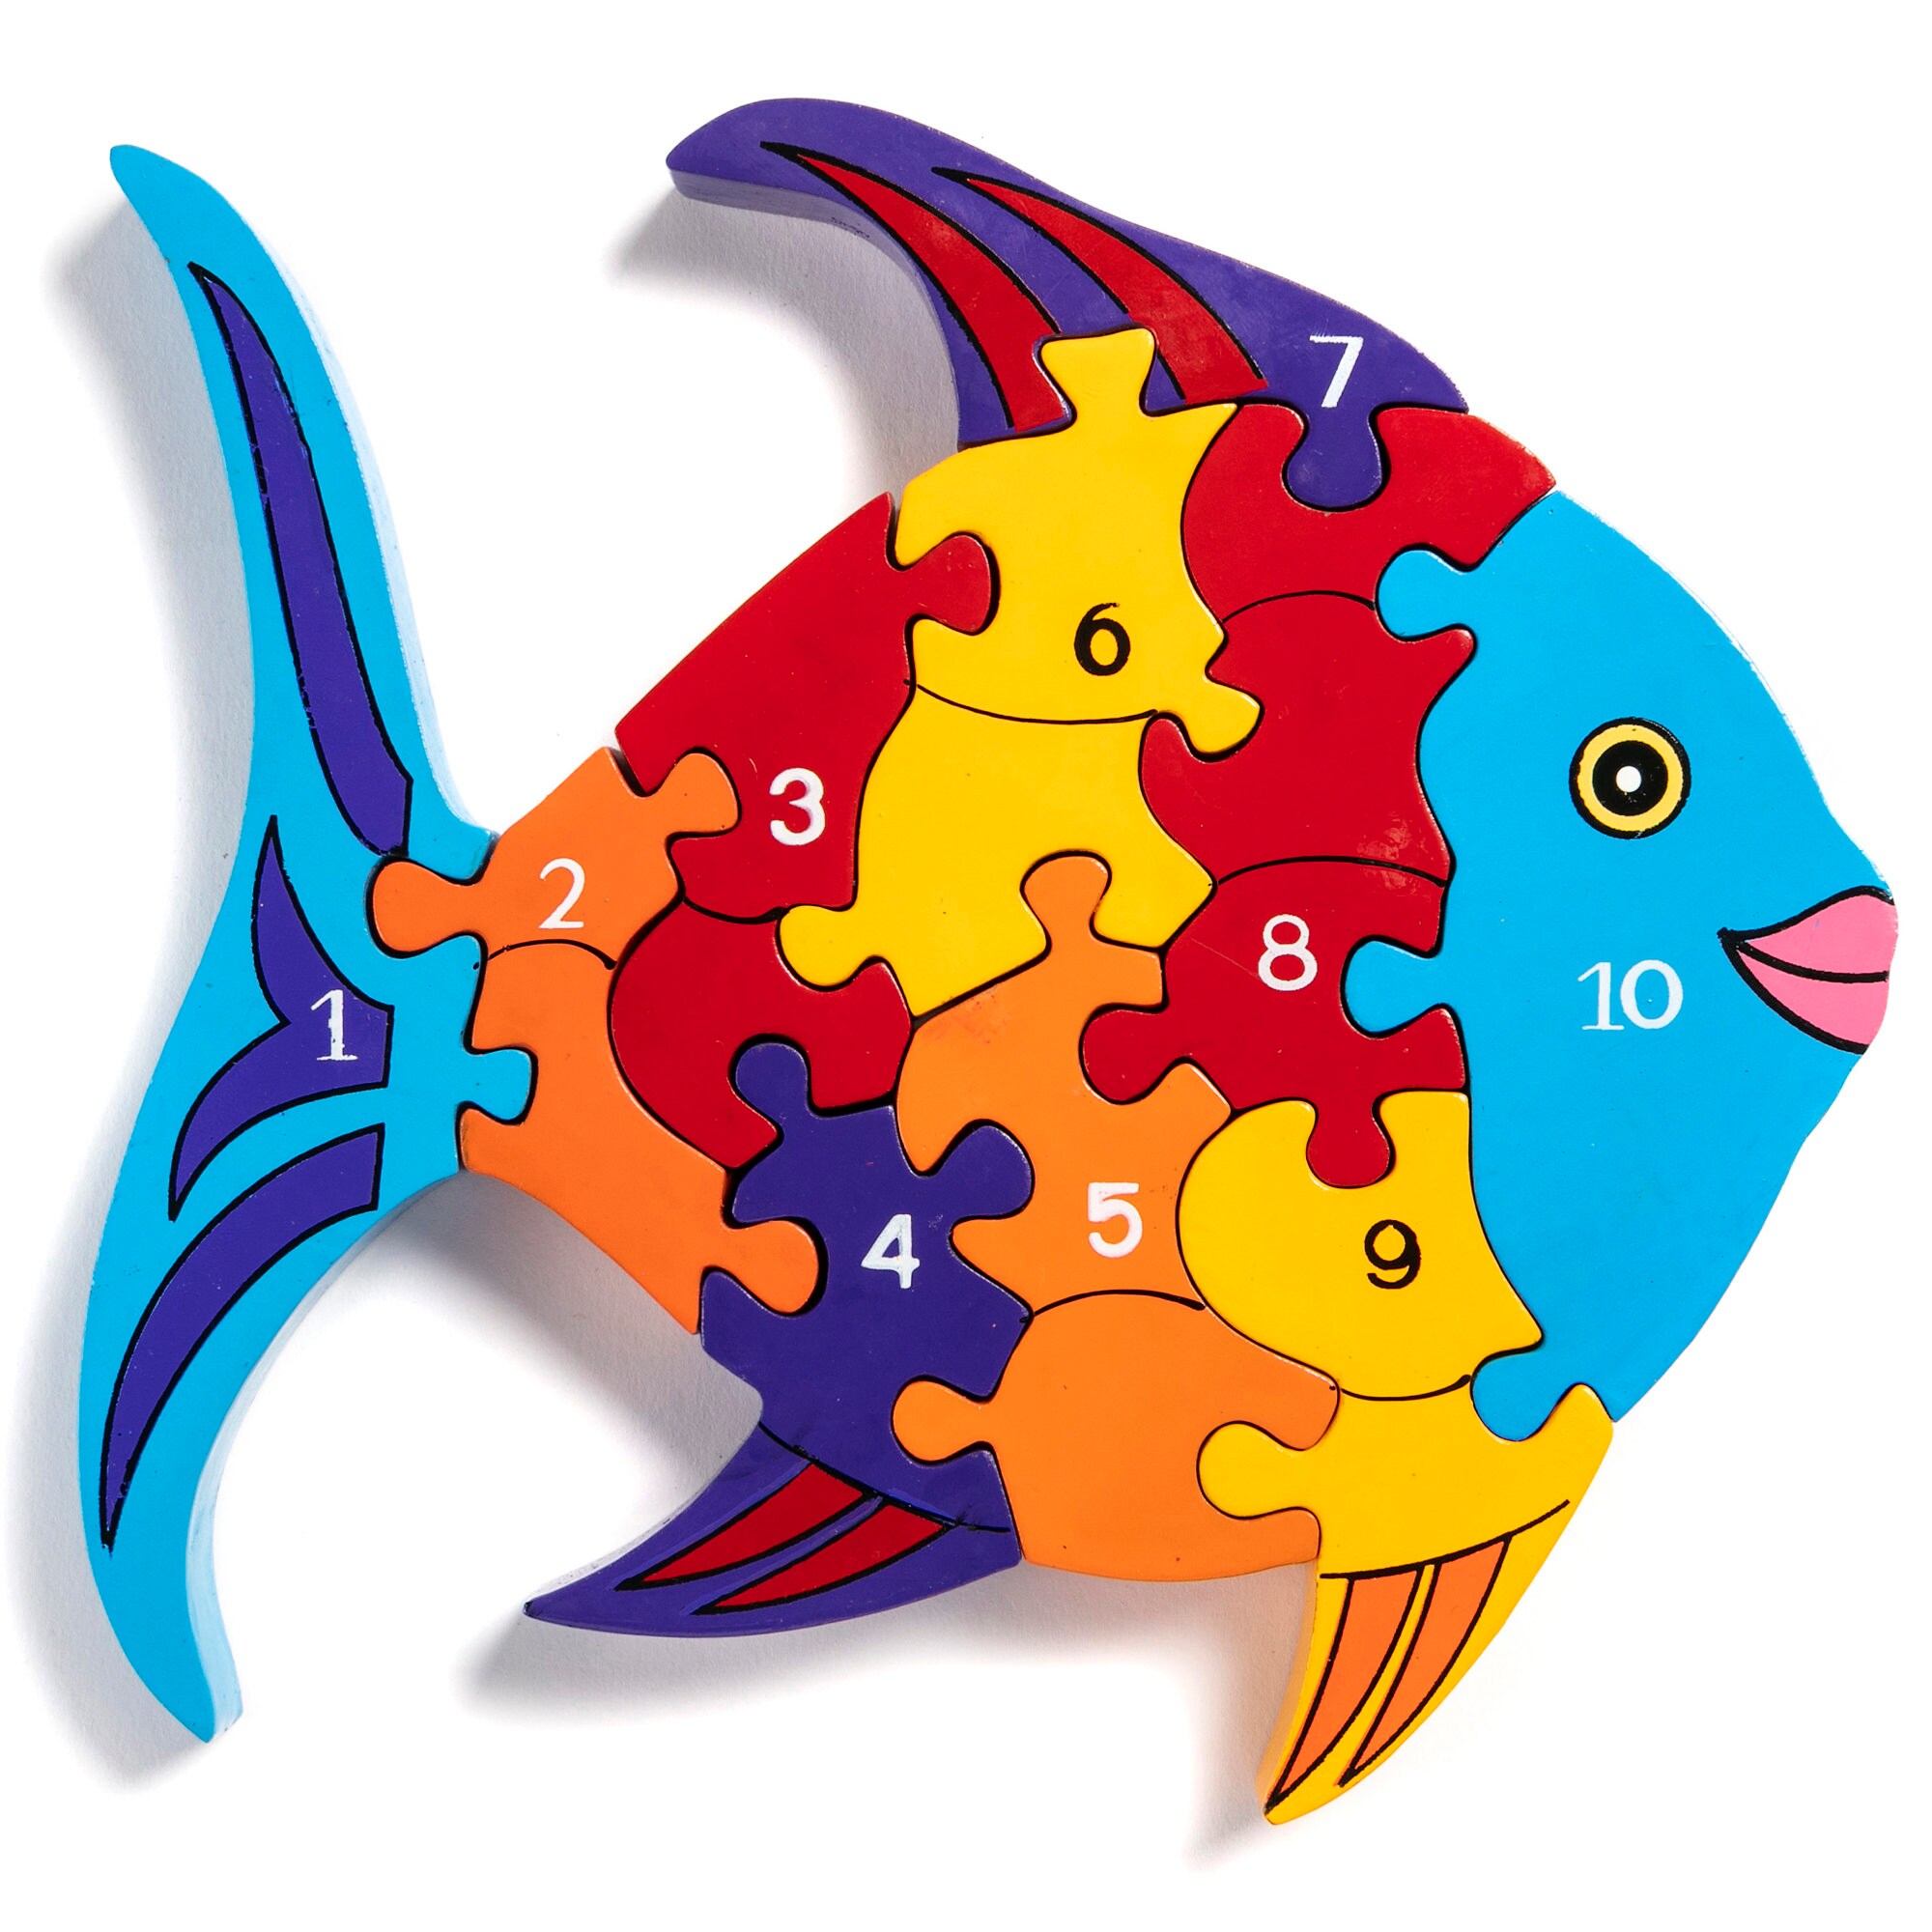 Multicolor Vovotrade® Pêche Cognitive Biologique Marine De Jeu De Pêche Pour Des Jouets De Flotteur De Puzzle Fishing Game Marine Biological Cognitive Fishing For Floaters Puzzle Toys 